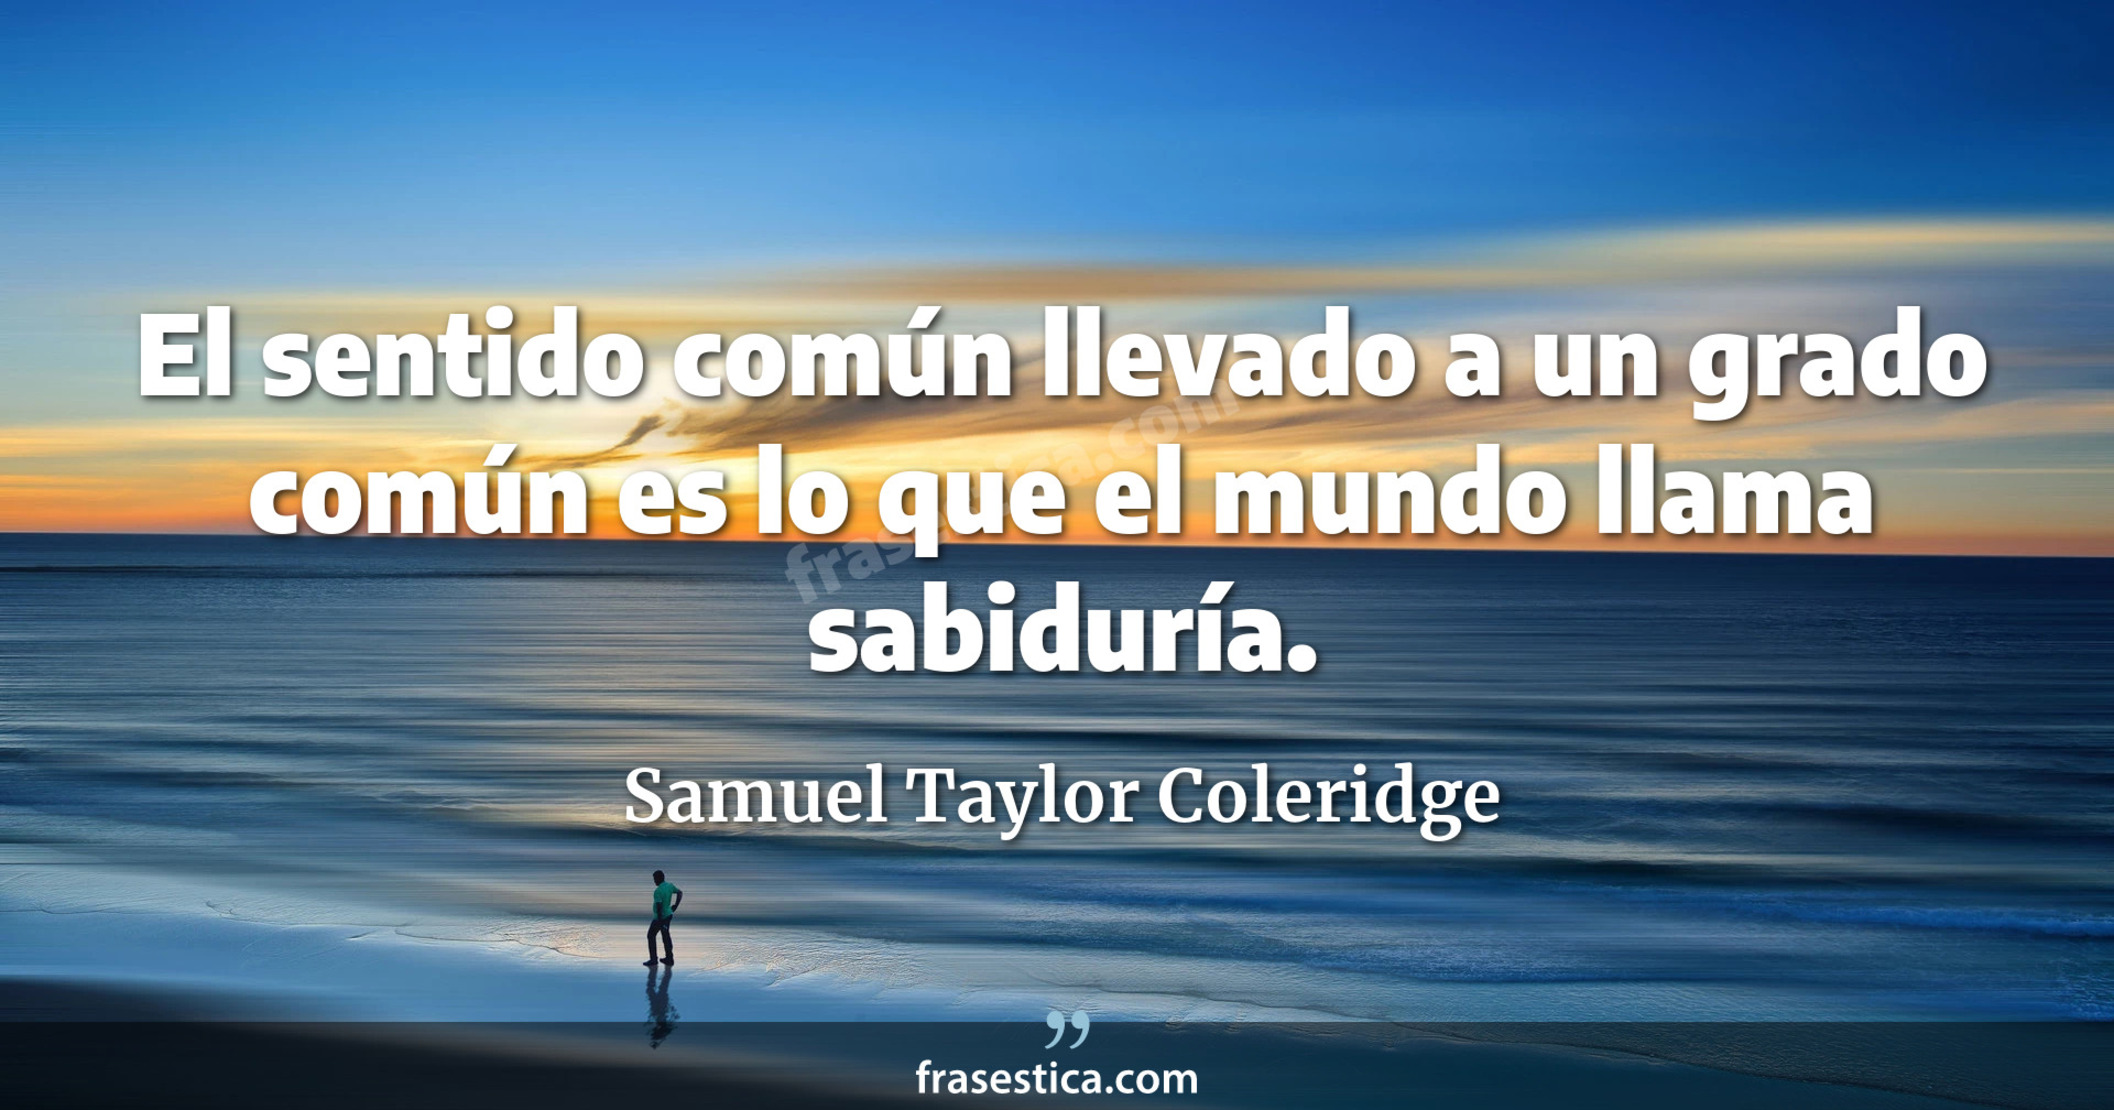 El sentido común llevado a un grado común es lo que el mundo llama sabiduría. - Samuel Taylor Coleridge